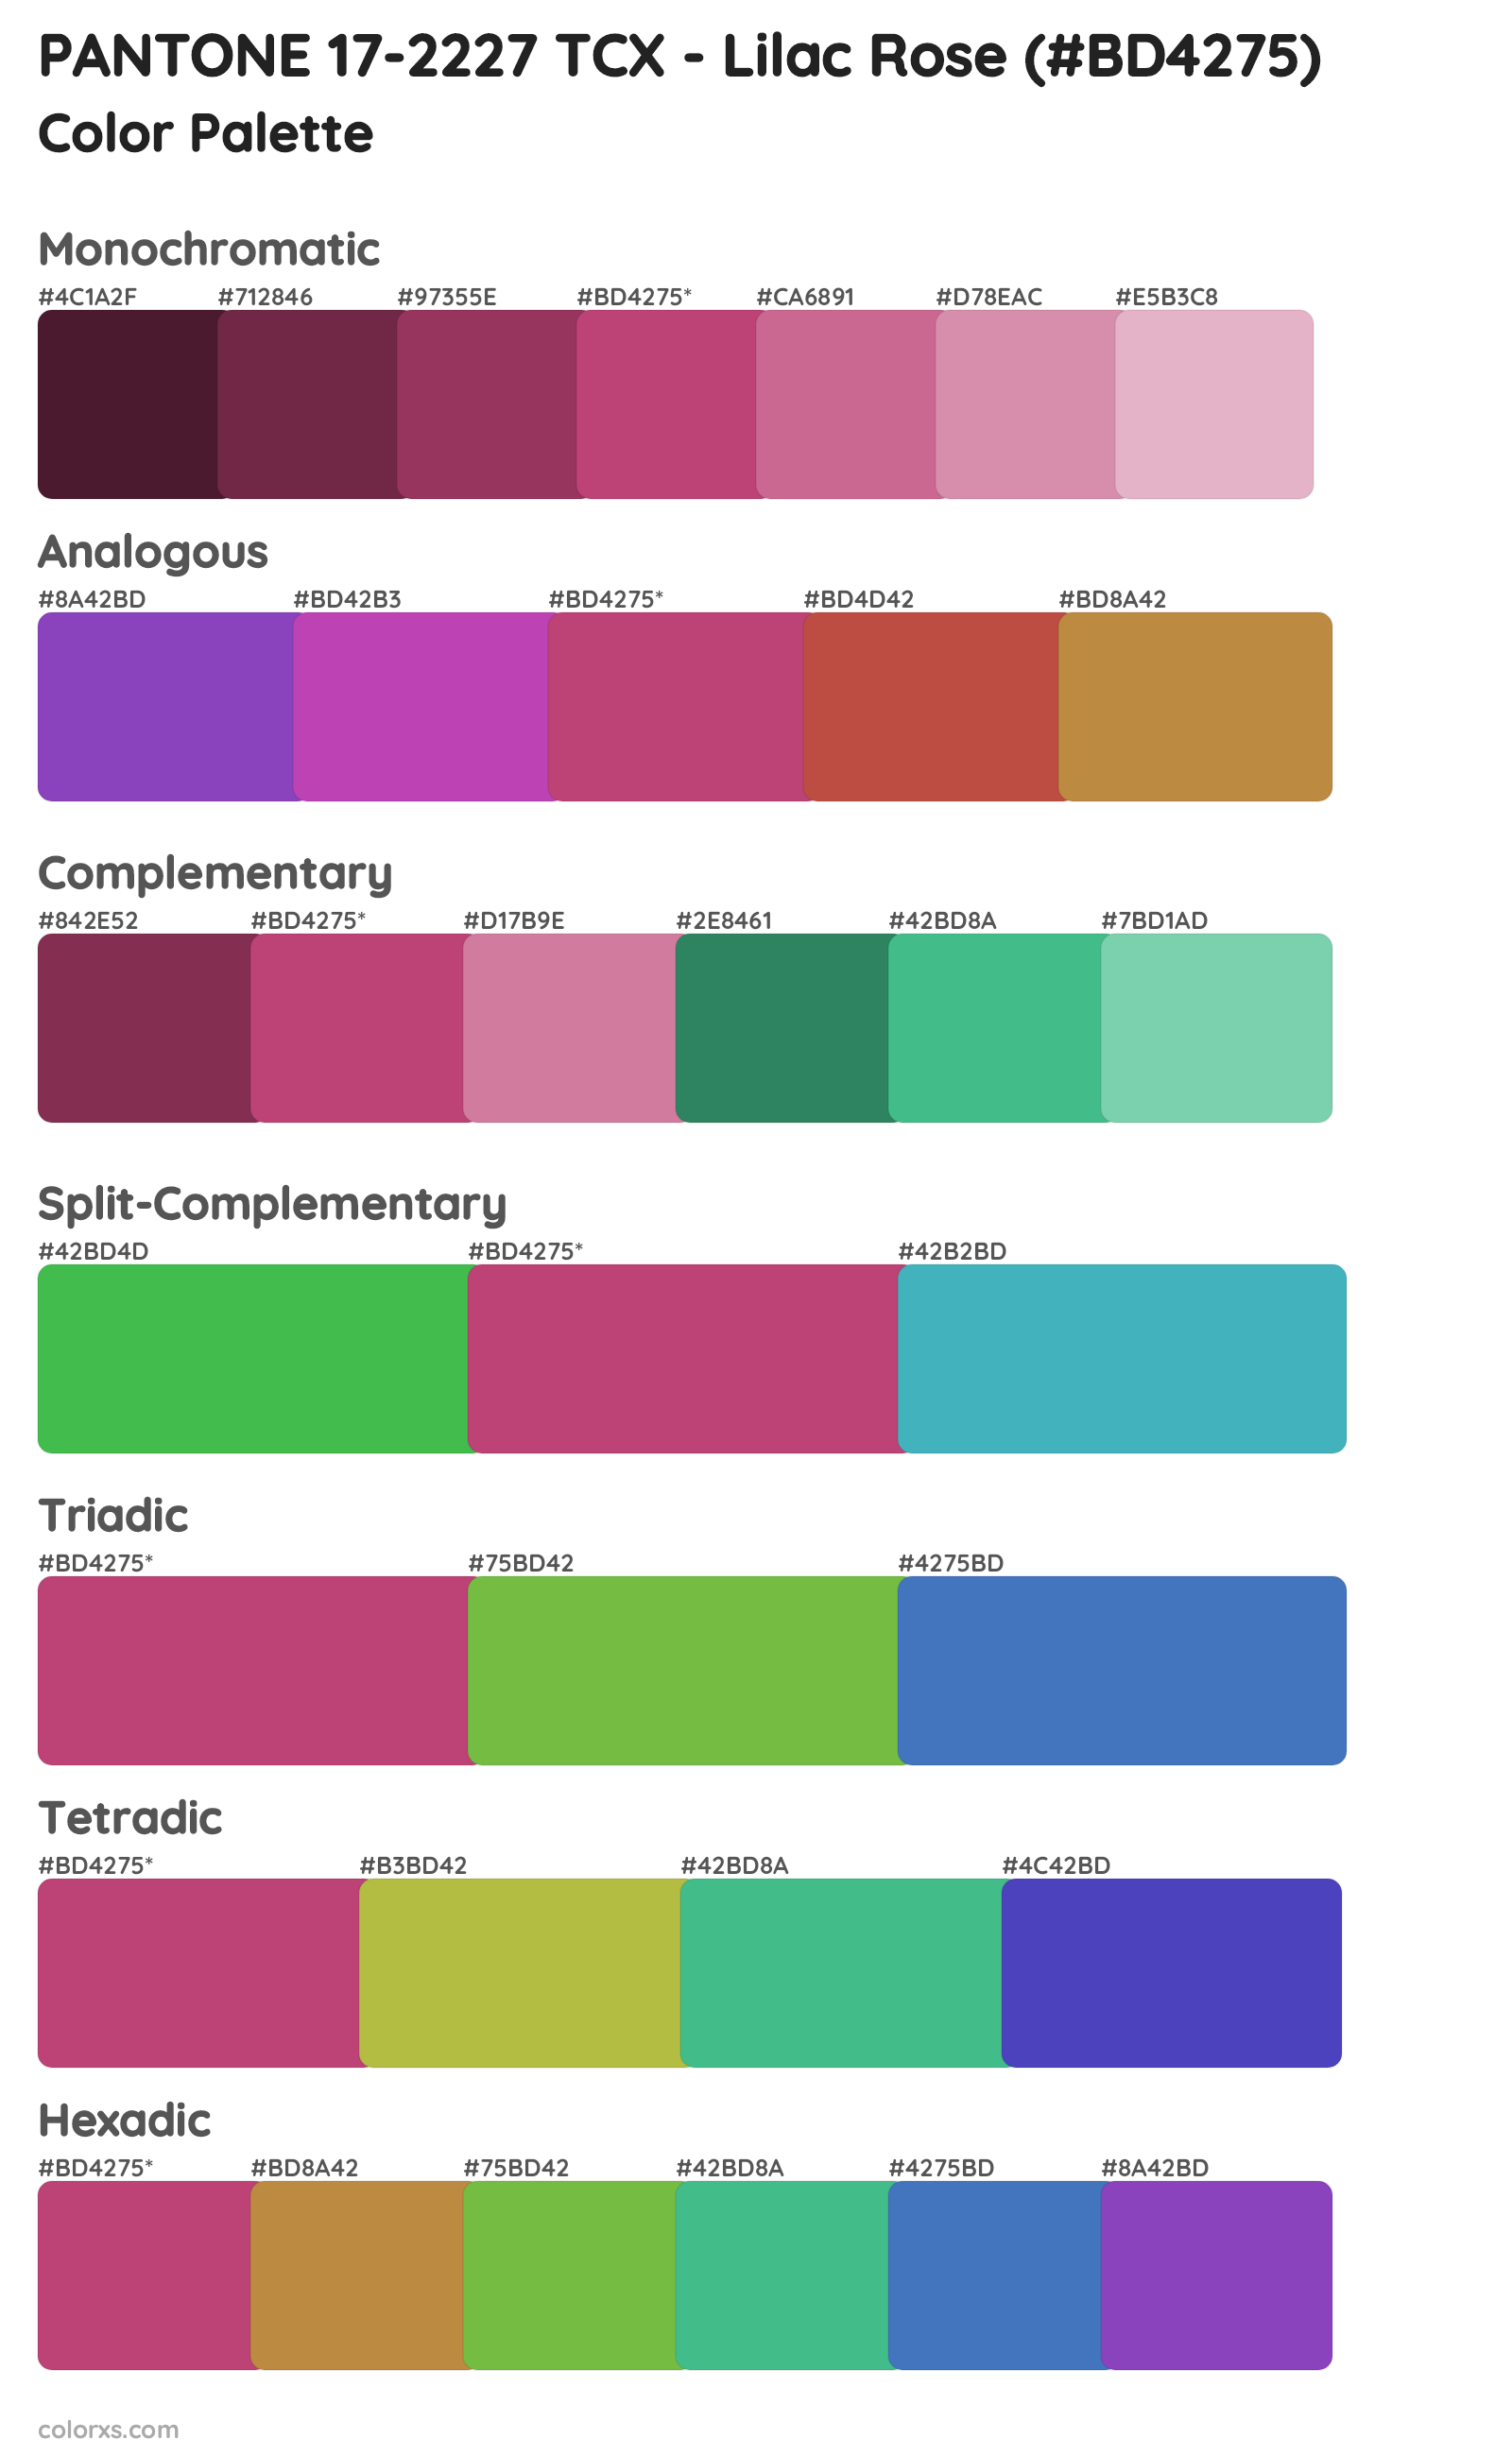 PANTONE 17-2227 TCX - Lilac Rose Color Scheme Palettes